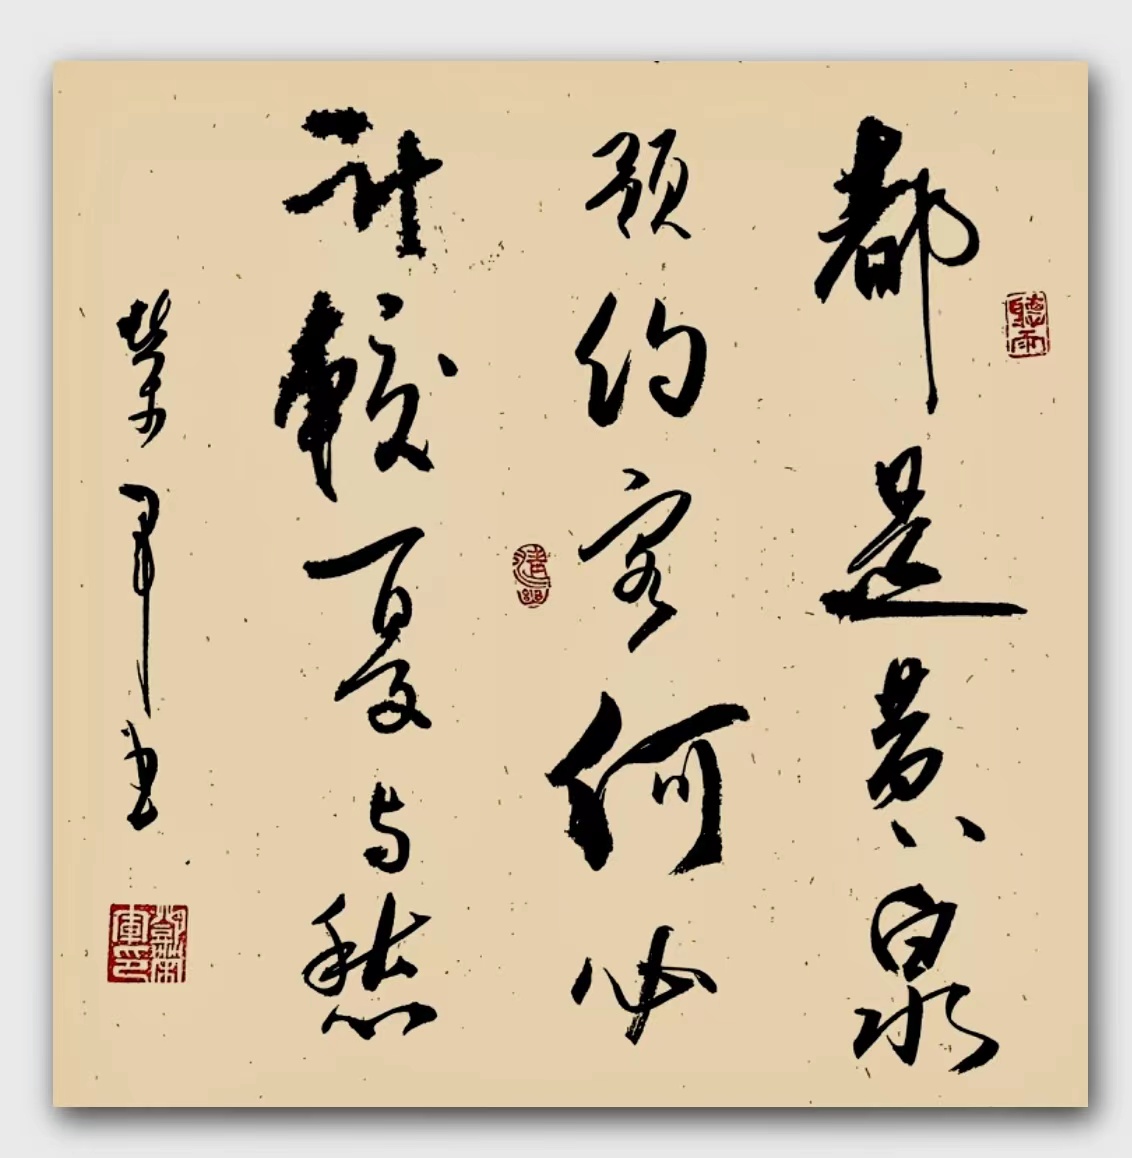 中国大众文化学会名人书画艺术发展委员会——邓荣军